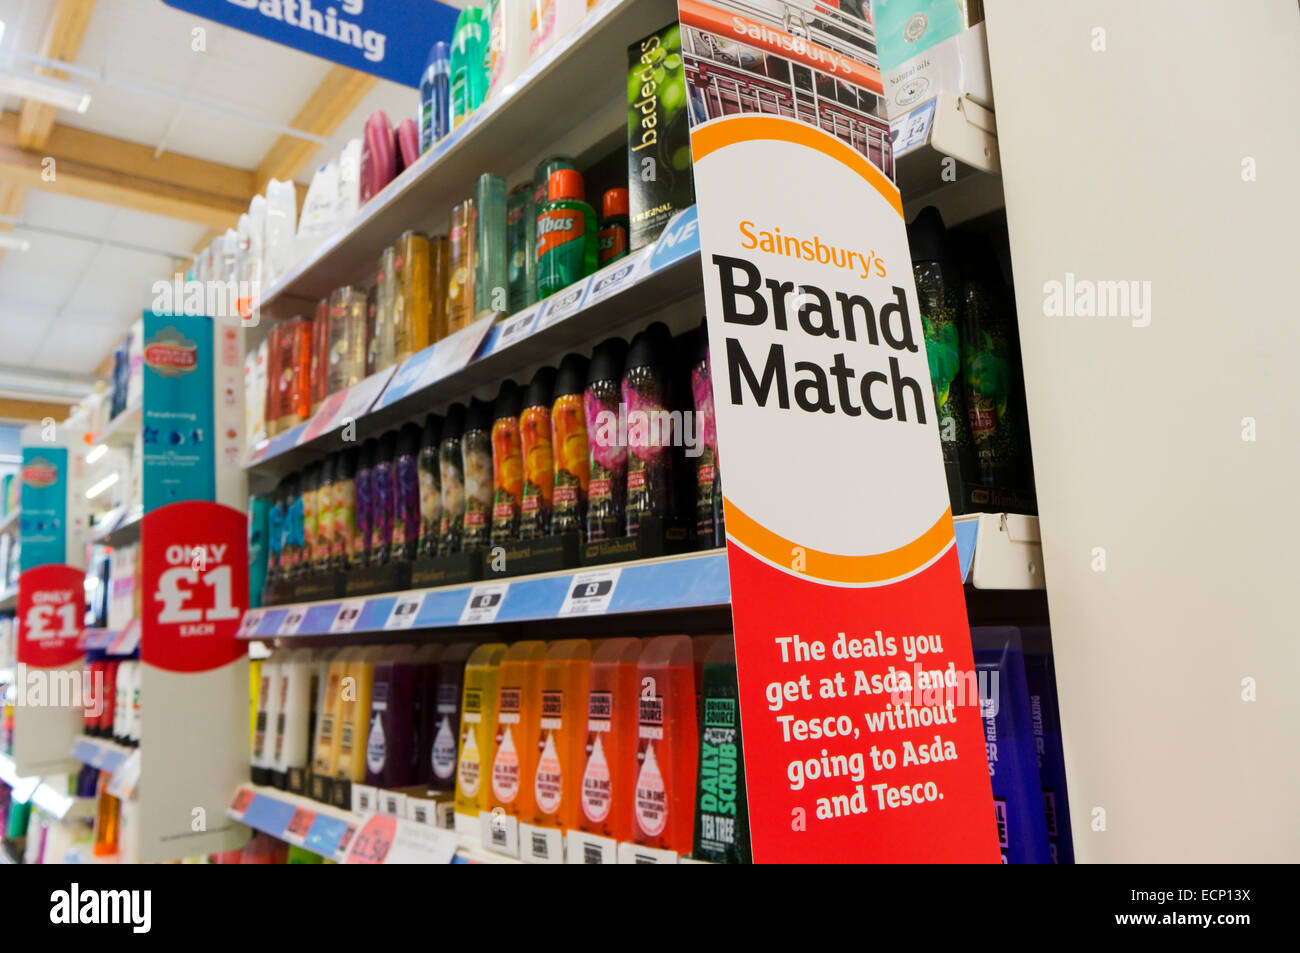 Sainsbury Marke Match prüft Preise gegen Asda und Tesco, um sicherzustellen, dass ihre Preise vergleichbar sind. Stockfoto